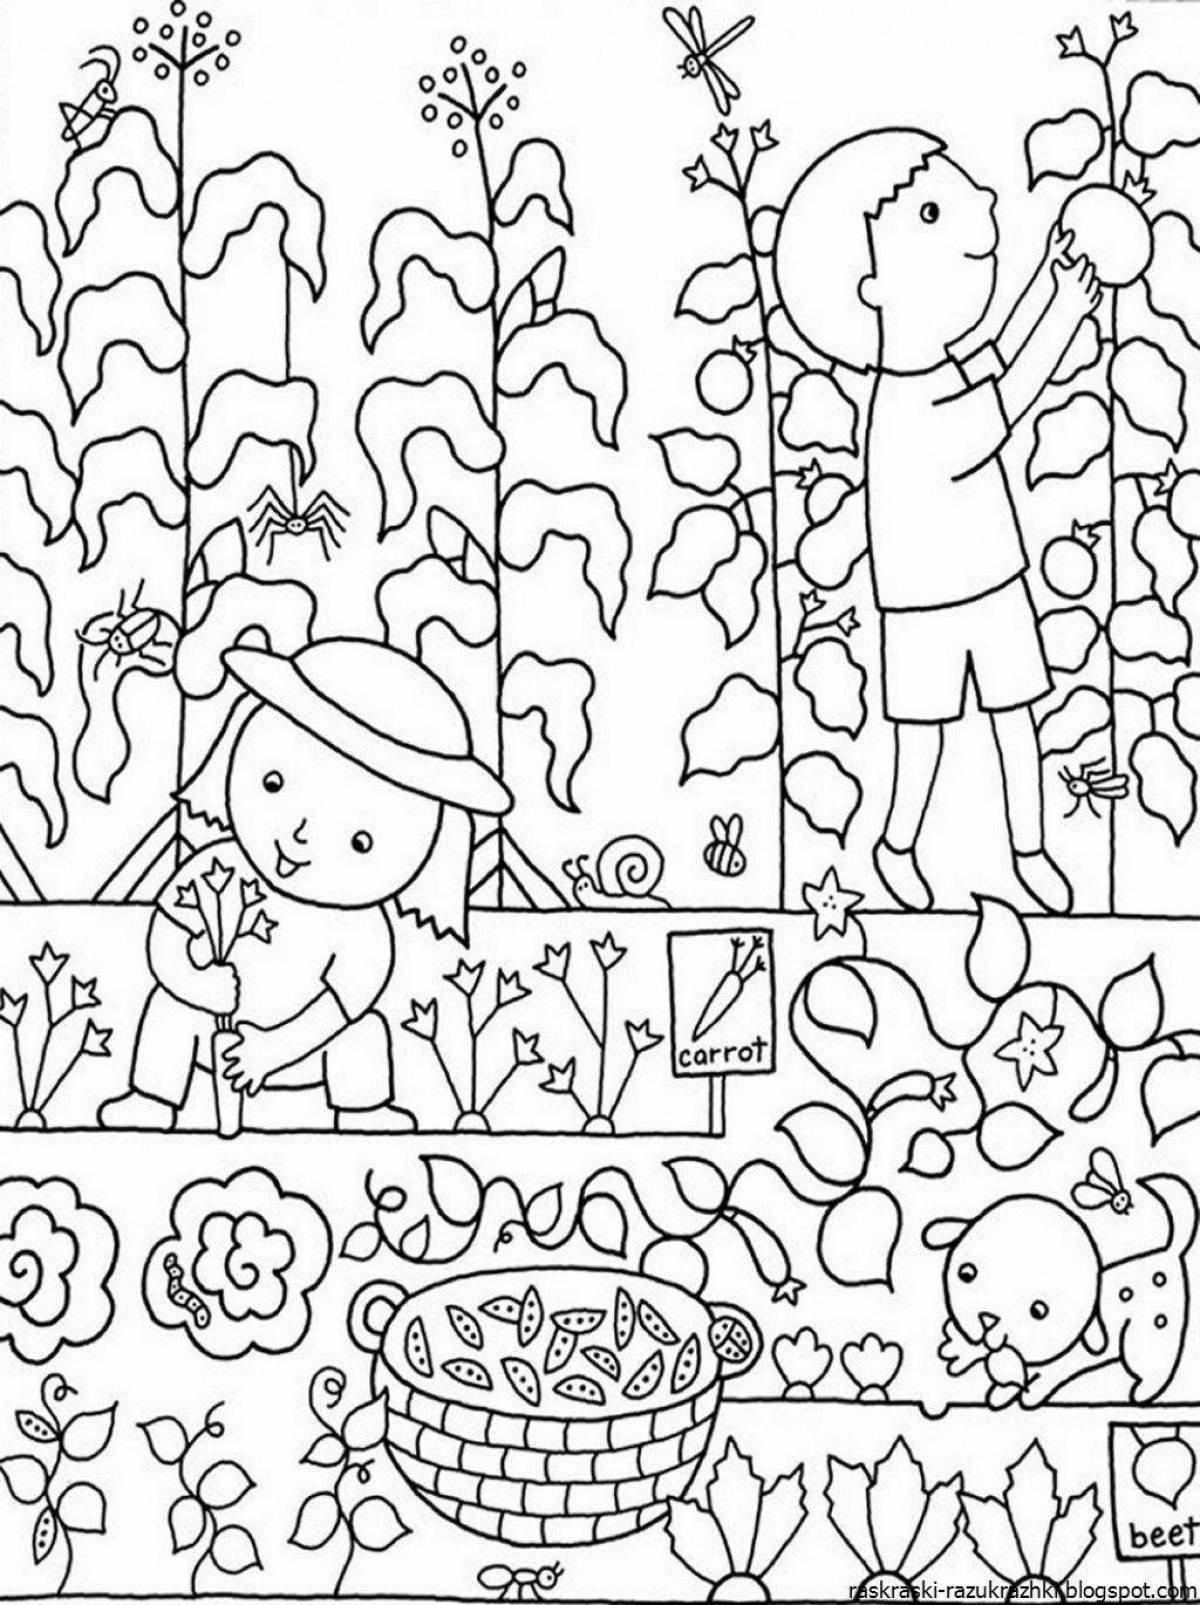 Fun coloring garden for kids